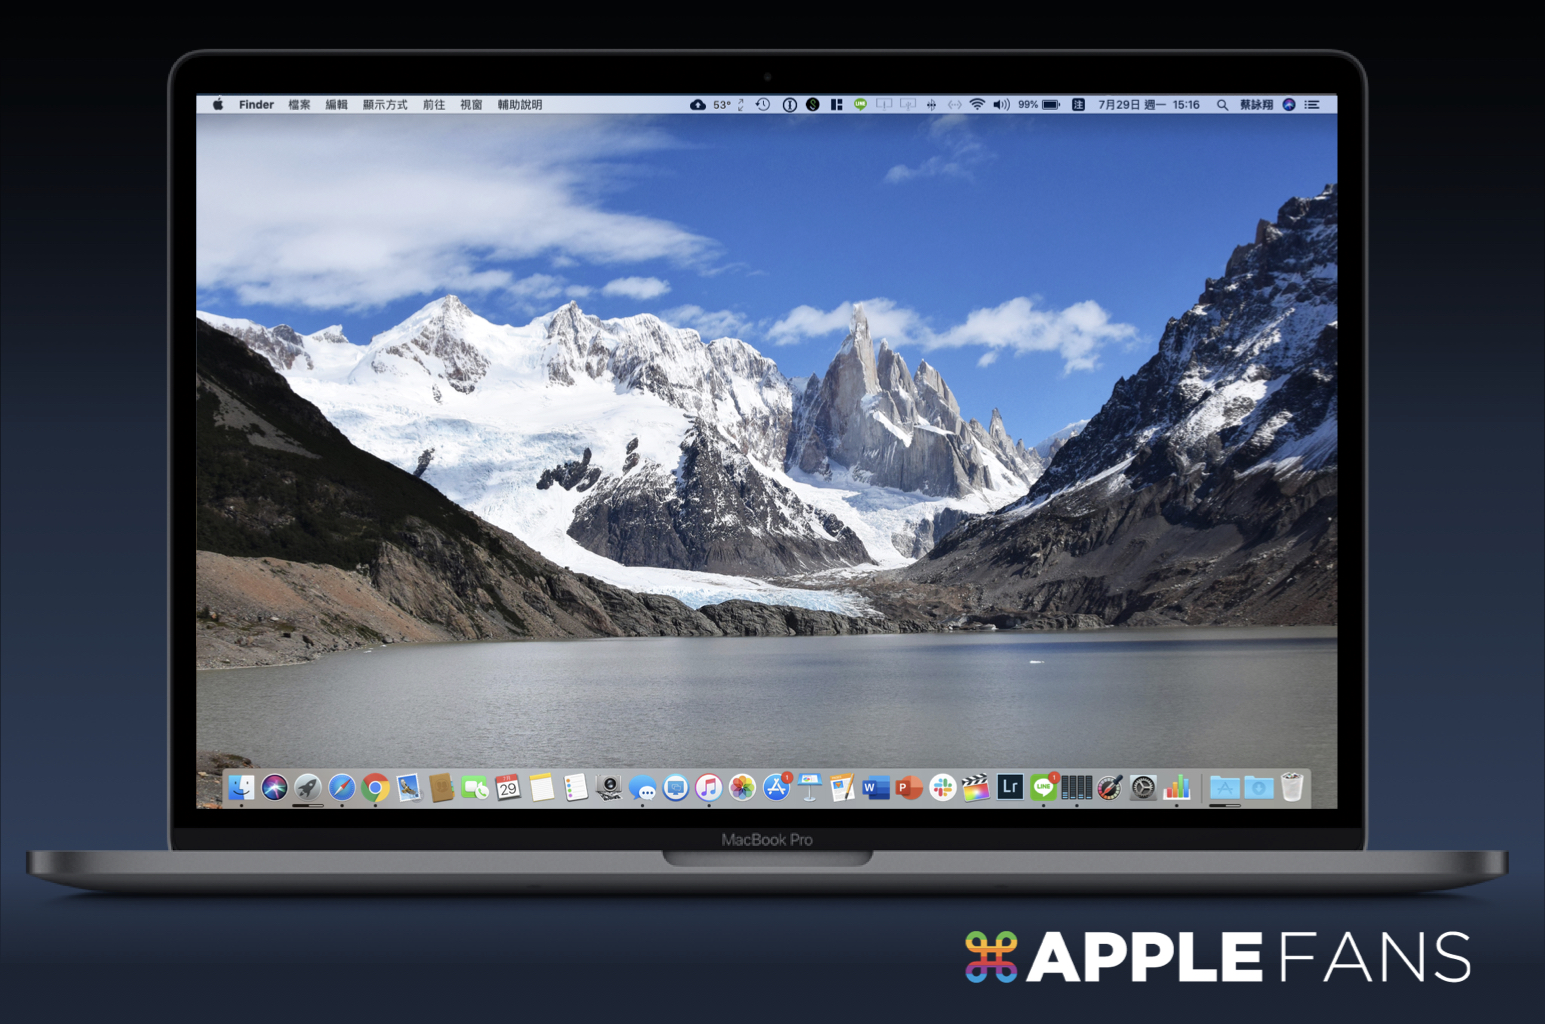 Mac 動態桌布太少嗎 這裡免費下載更多 蘋果迷applefans